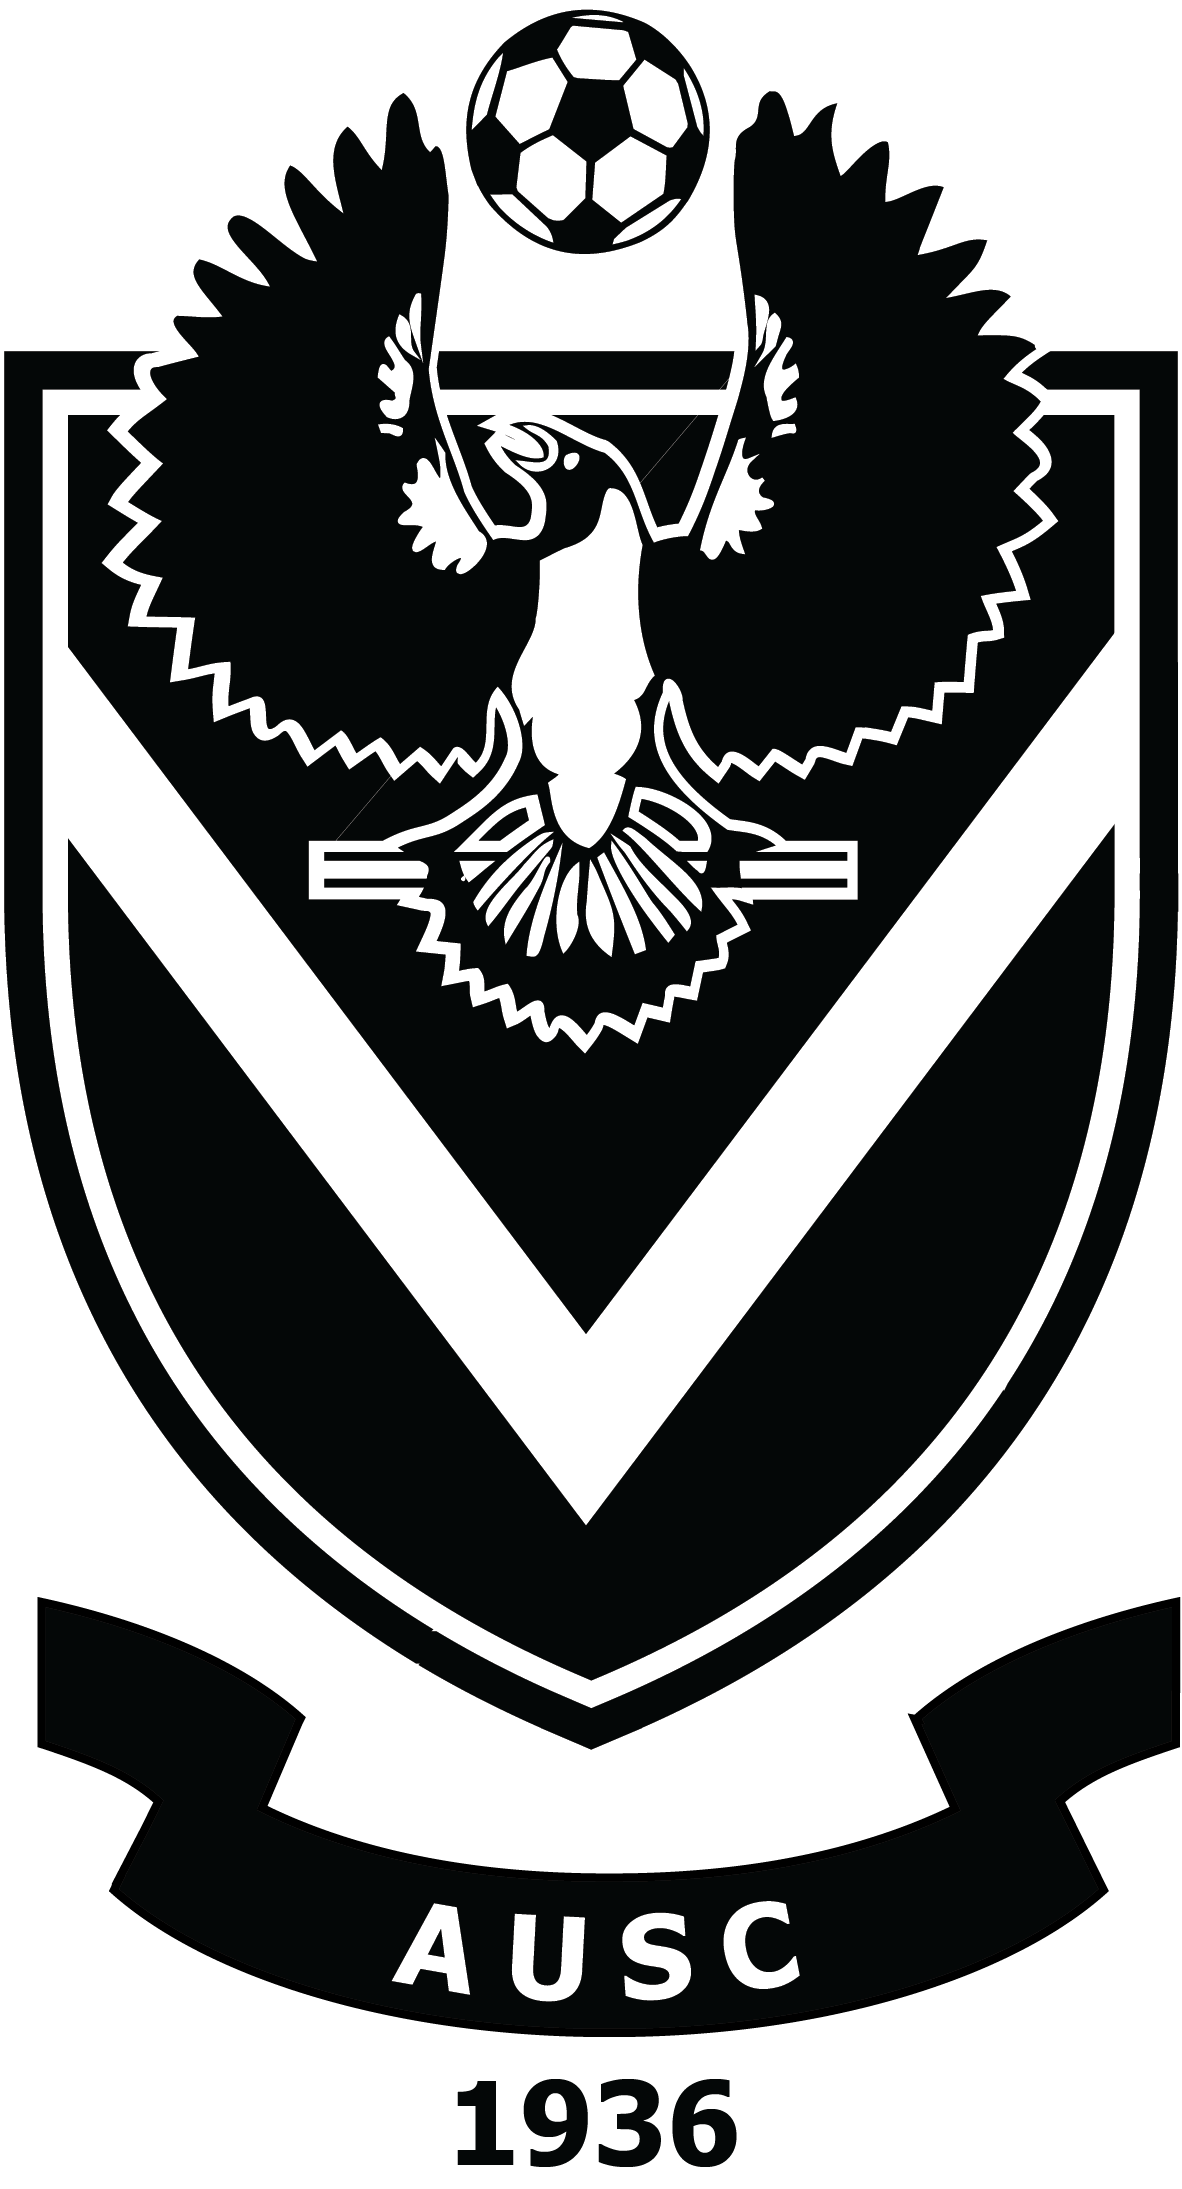 Black and White Soccer Logo - Adelaide University Soccer Club